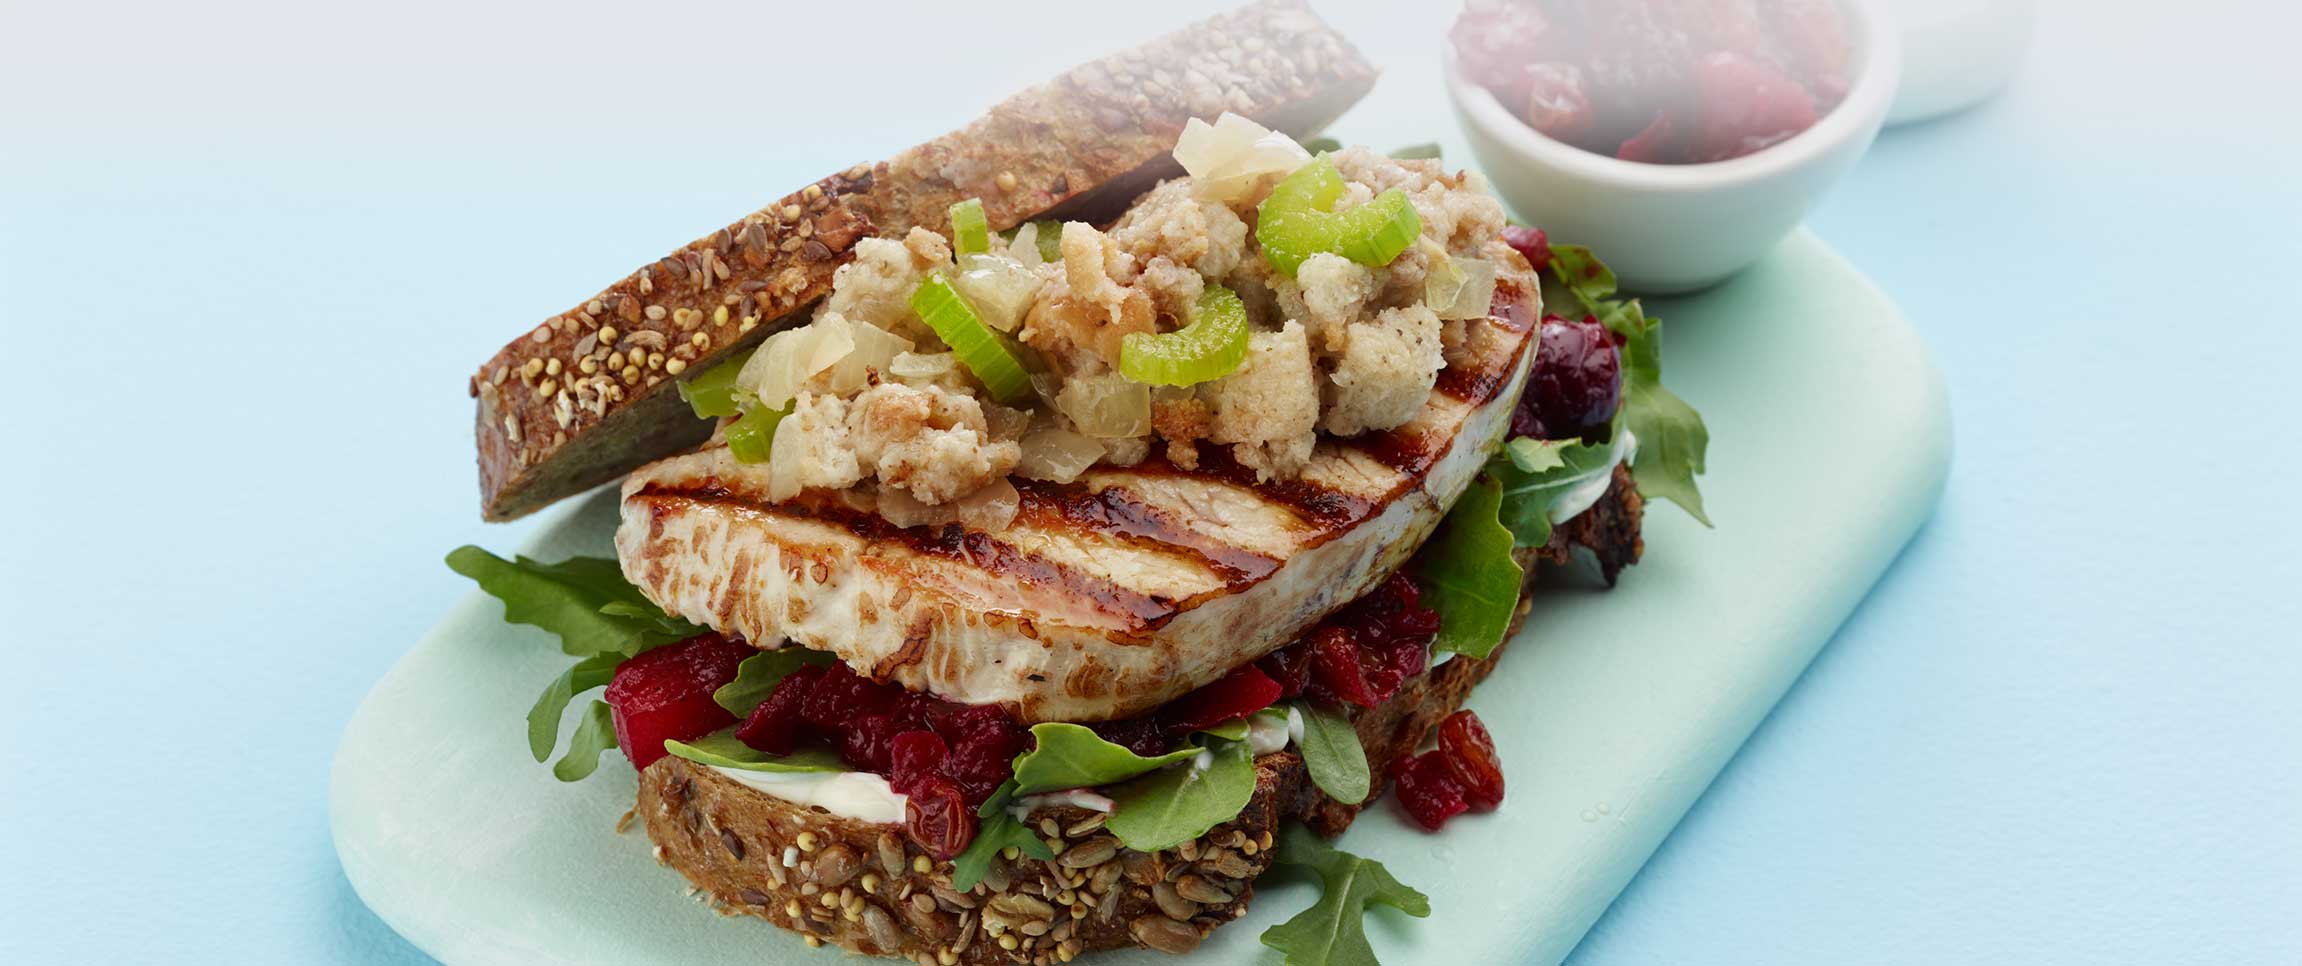 Turkey Filet Sandwich